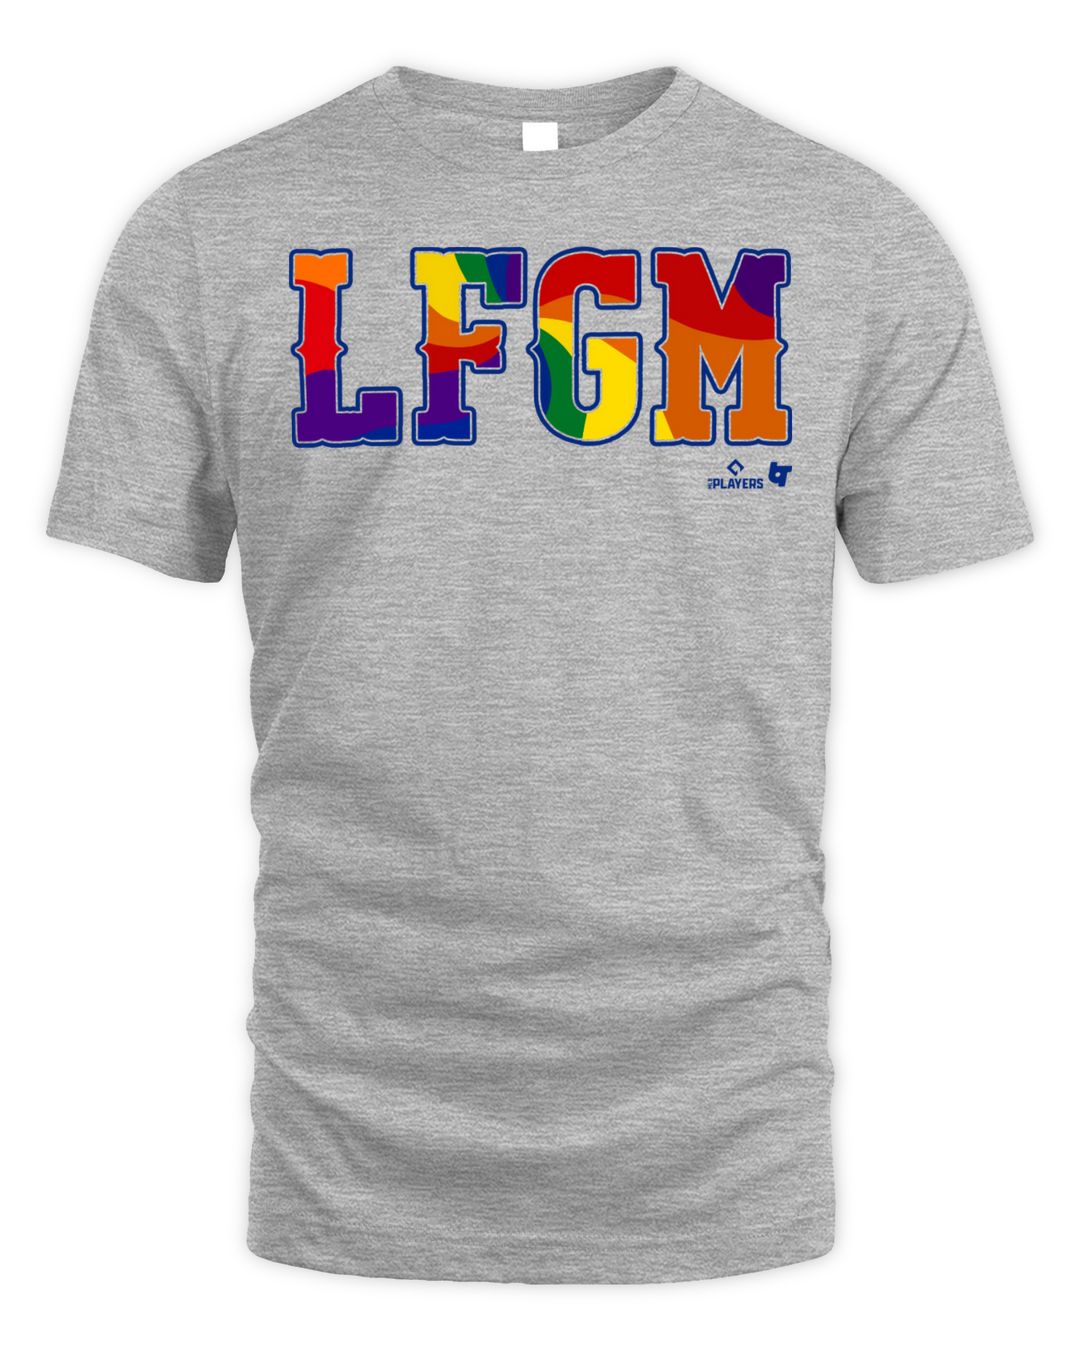 LFGM Pride Shirt